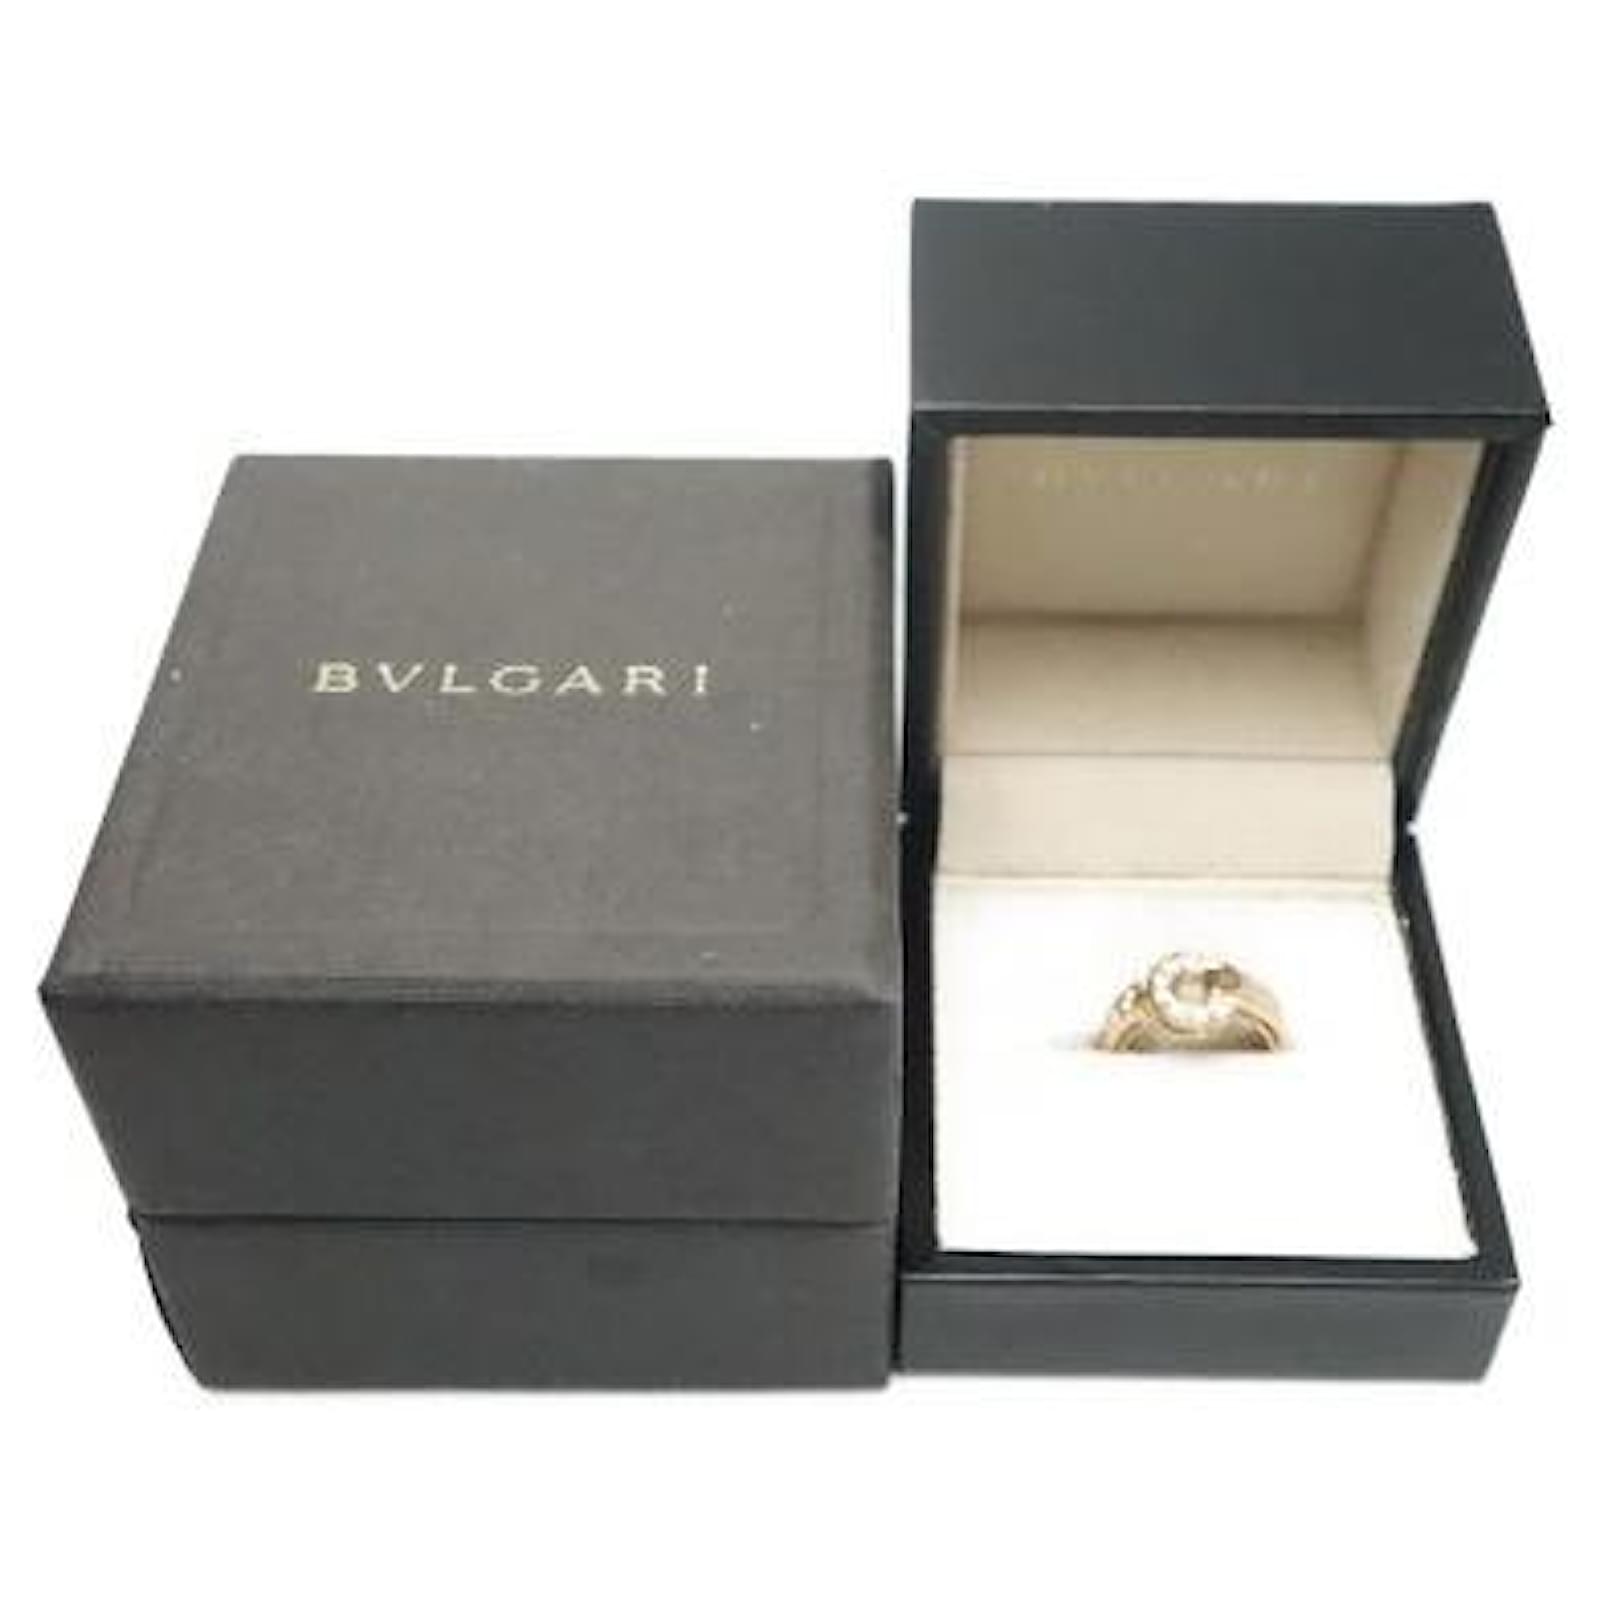 Bulgari [Used] Bvlgari [Box] Ring / Diamond / K18PG / # 6.5 Golden Pink ...